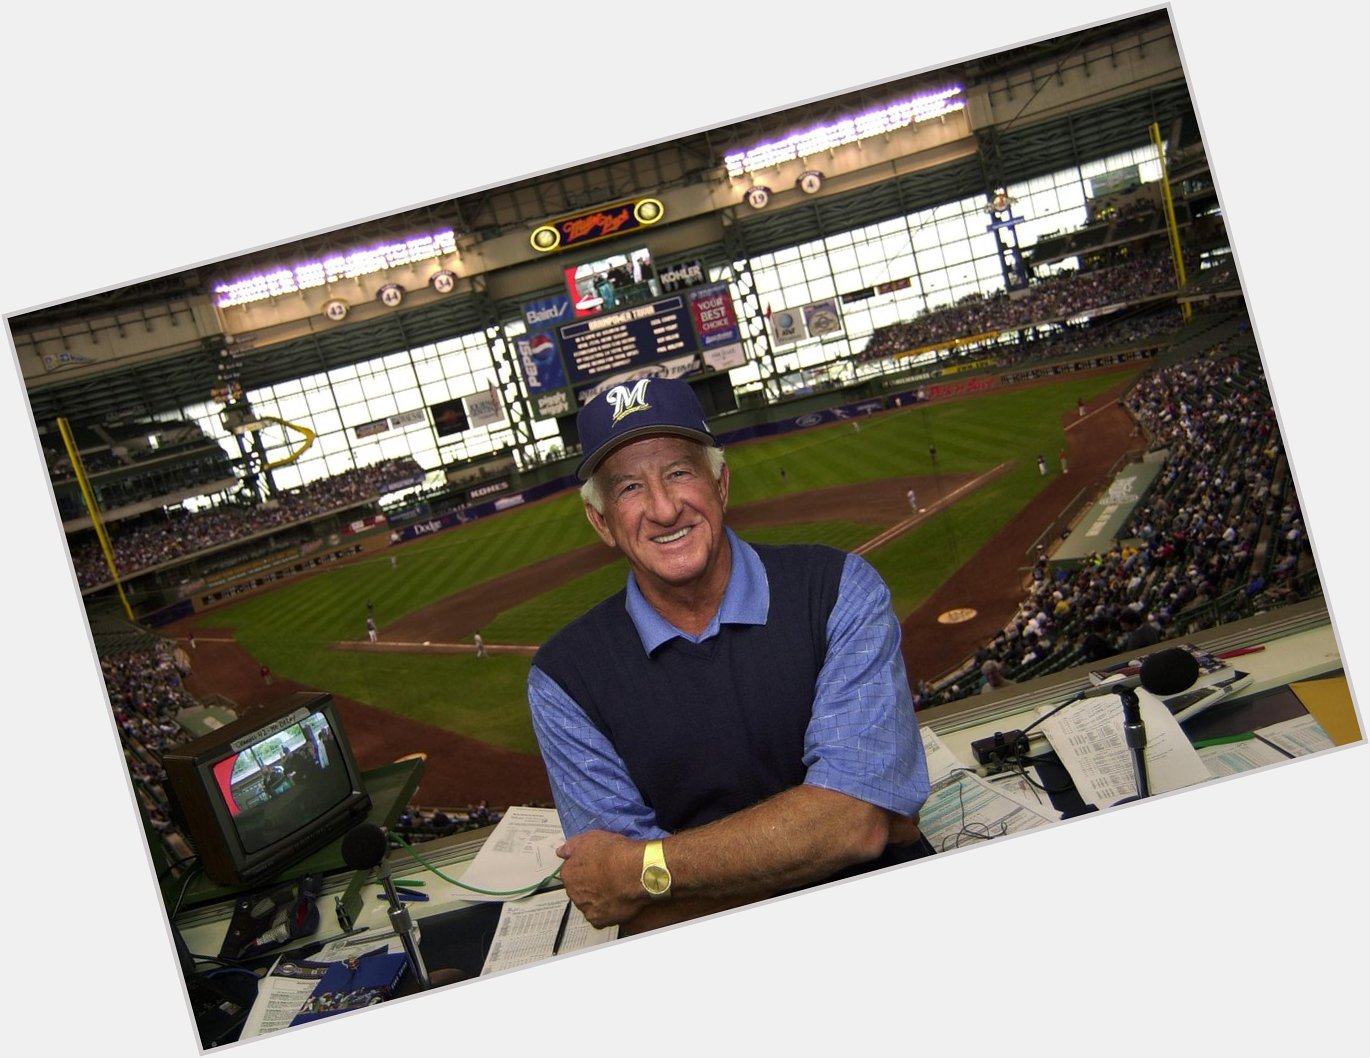 Happy birthday to Mr. Baseball, Bob Uecker!  